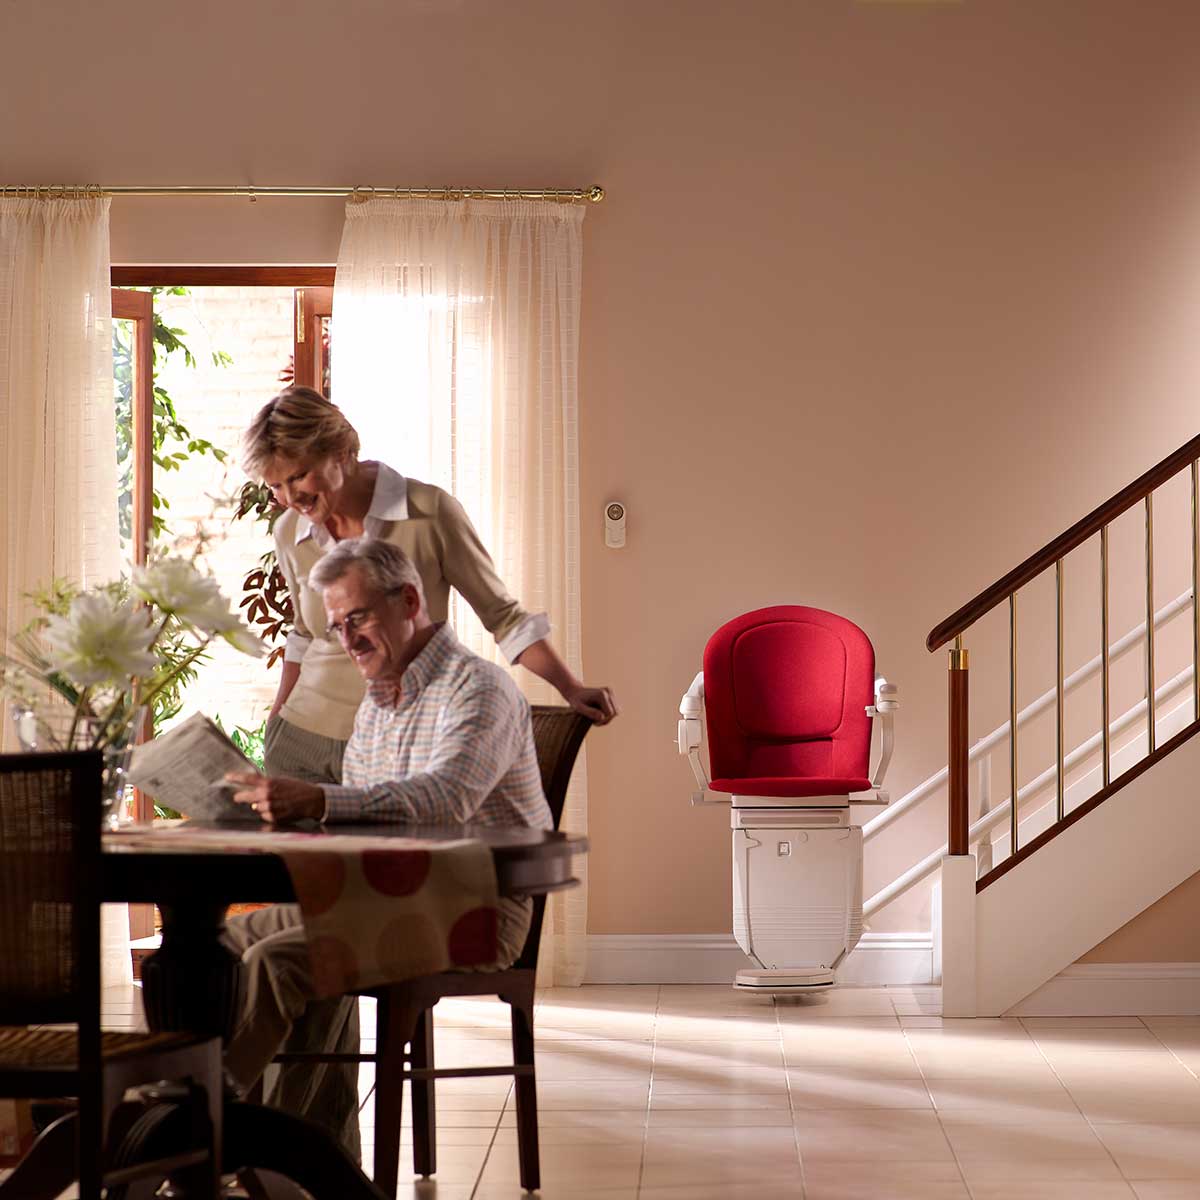 Ein älterer Mann sitzt an einem Tisch und liest eine Zeitung hinter ihm steht eine ältere Frau und sieht zu das Interieur eines warm beleuchteten Hauses verfügt über einen Sitzlift